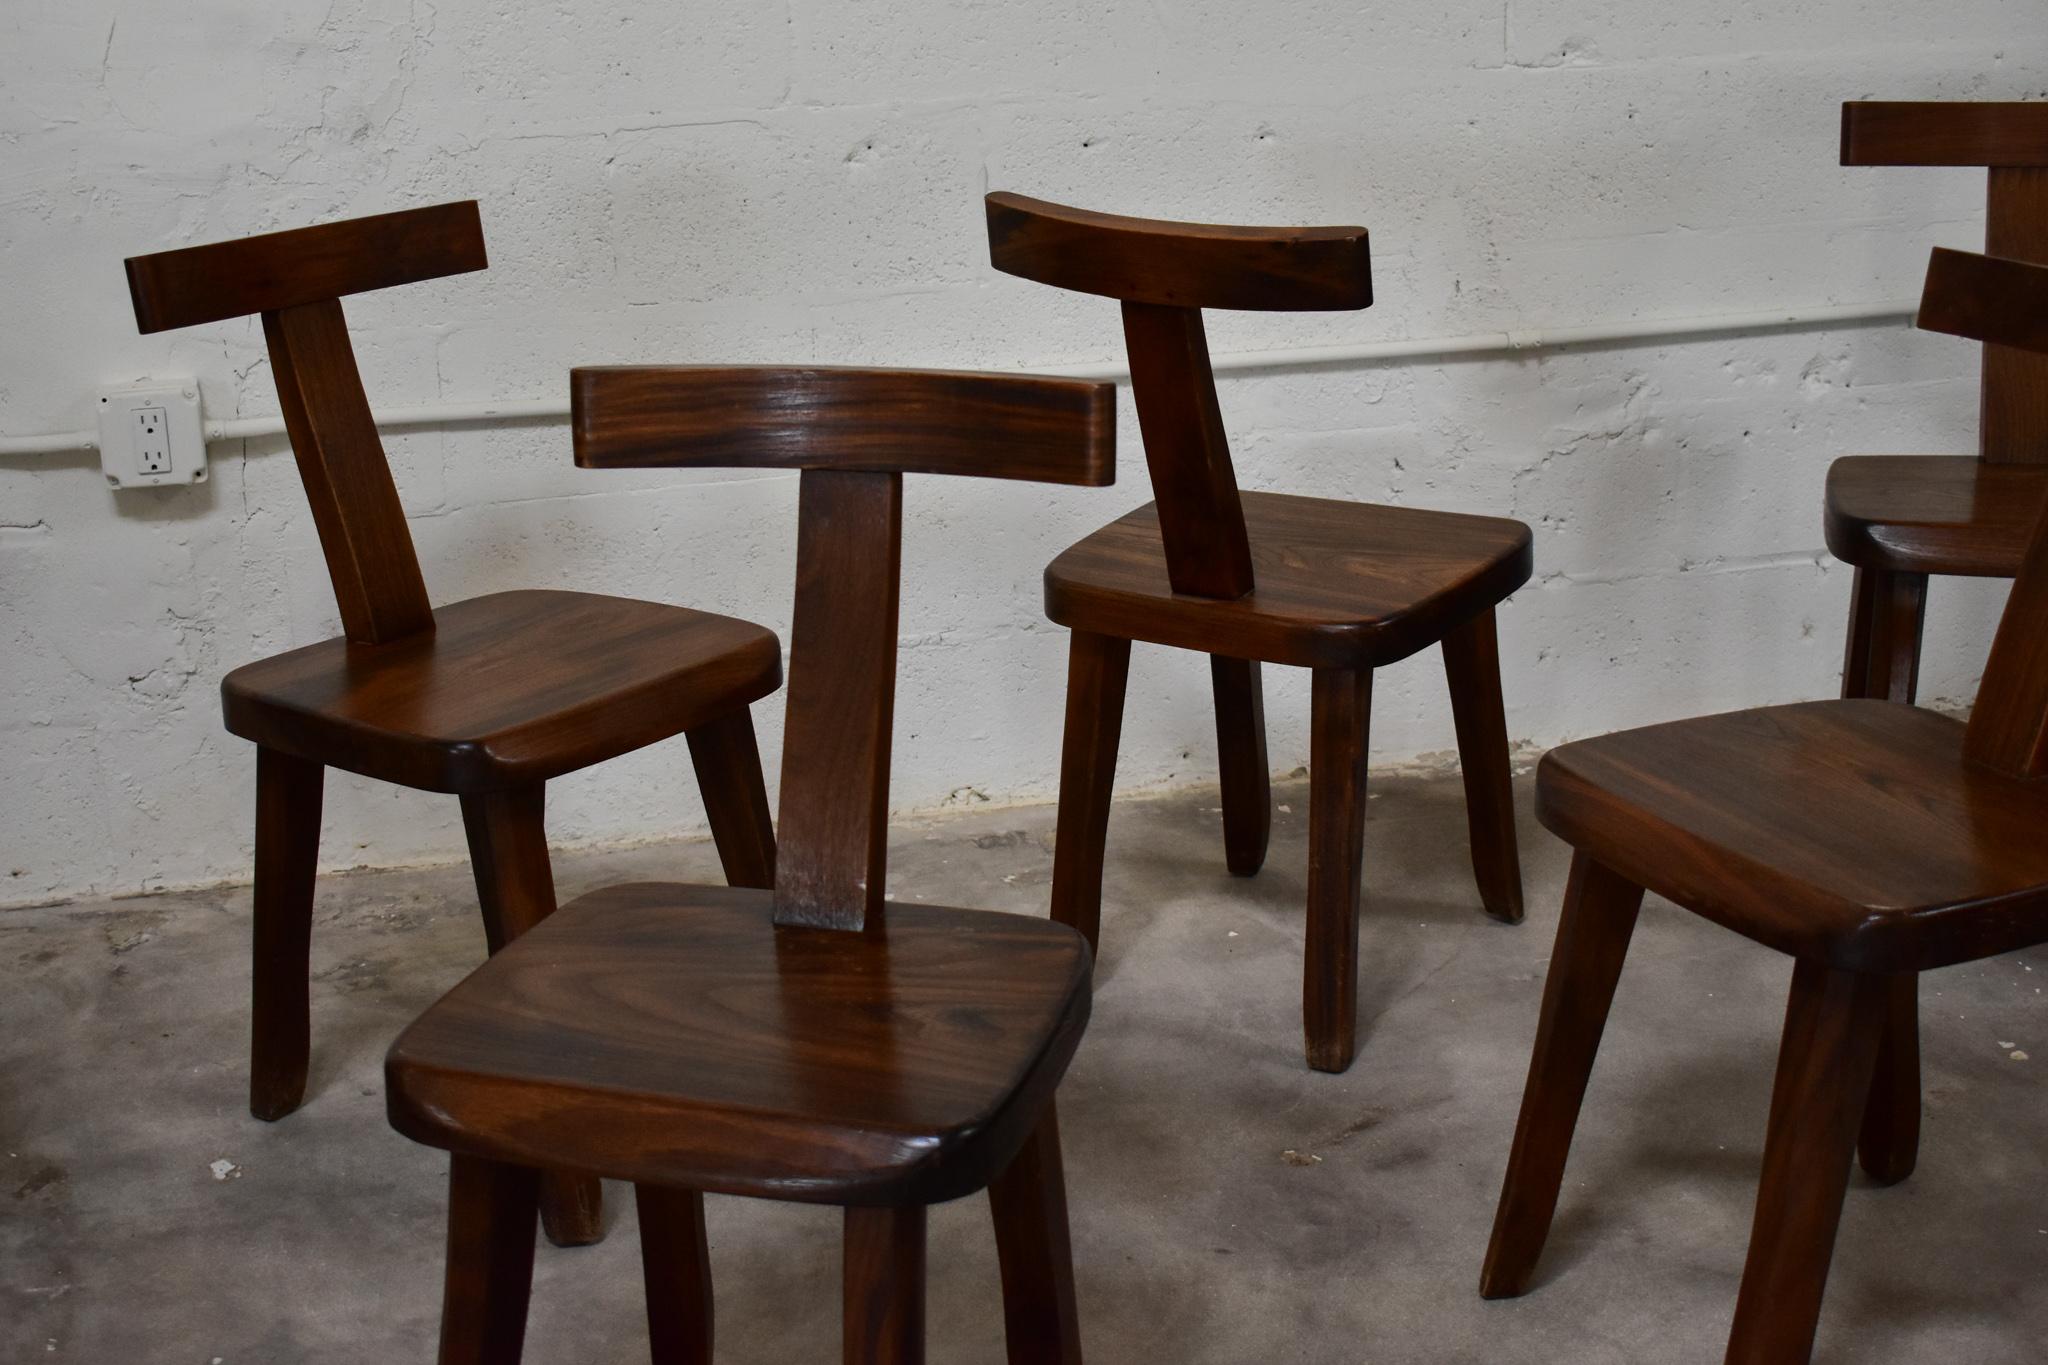 Ces chaises de salle à manger brutalistes ont été conçues par olavi hanninen . La forme libre de ces chaises en orme incarne la nature du brustalisme et son attrait pour l'objet imparfait fait à la main. Bien que le brutalisme soit connu pour être